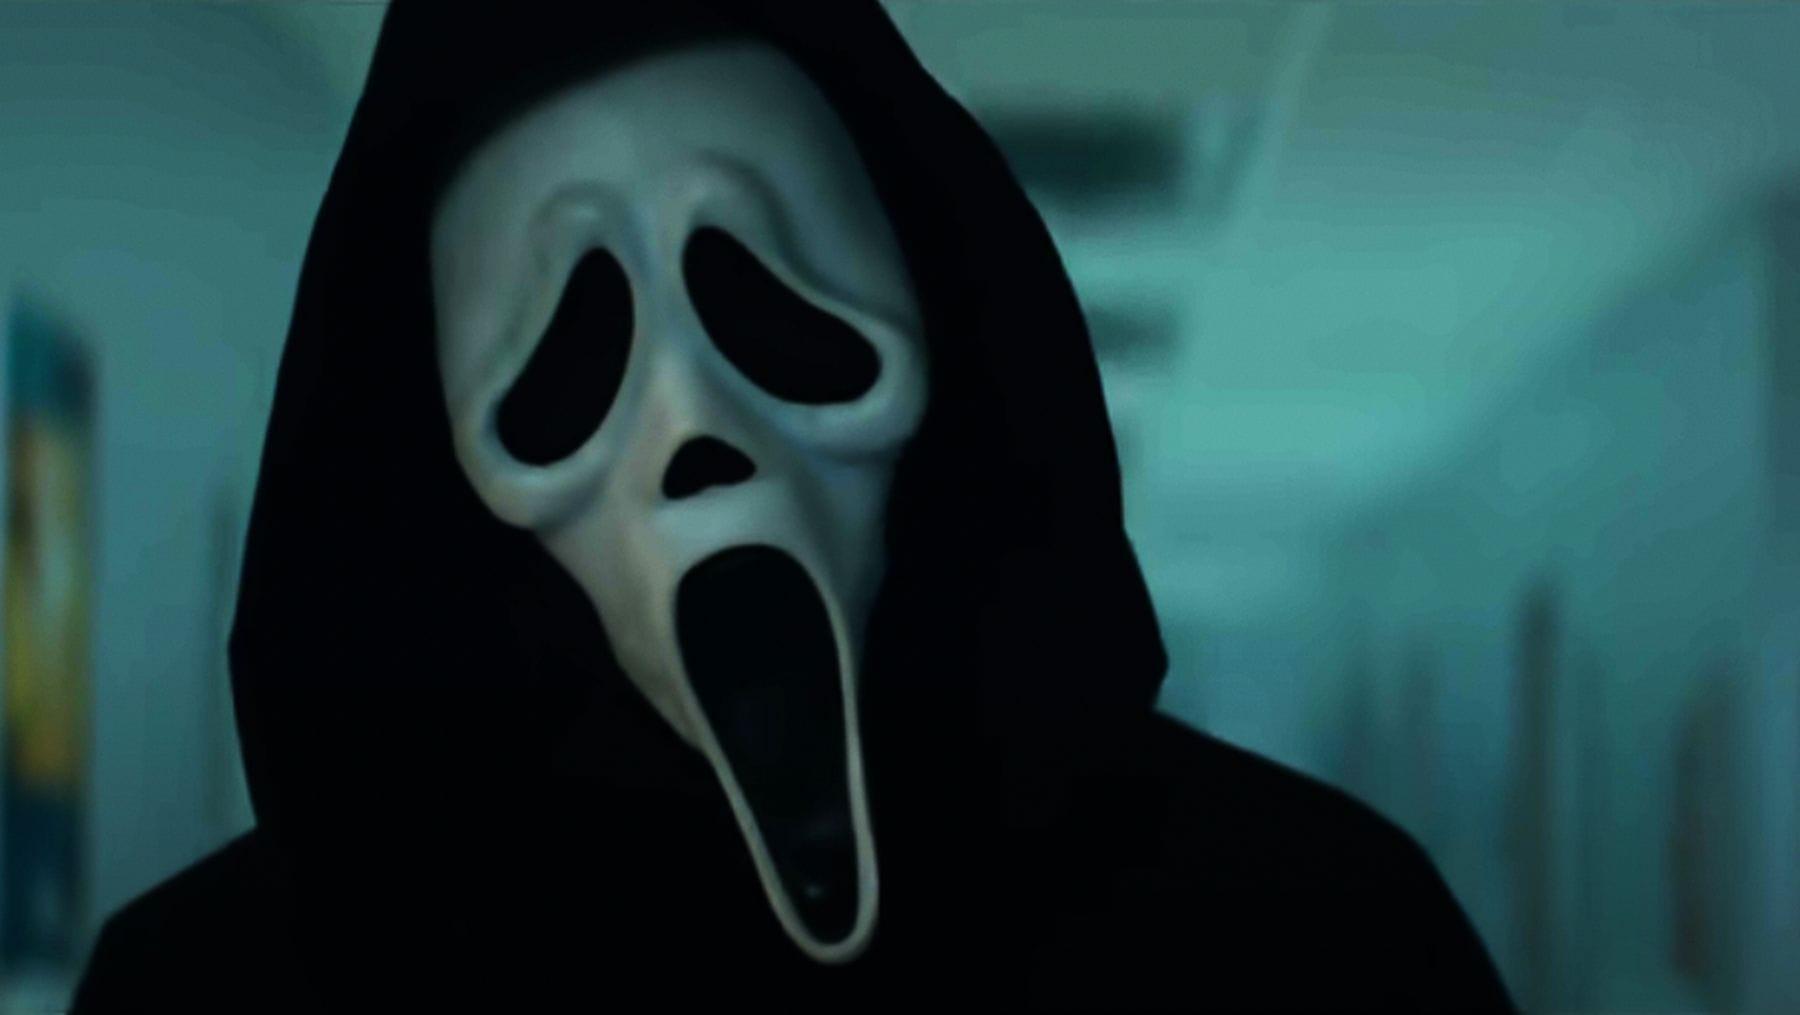 O assassino Ghostface aparece mais terrível do que nunca em Pânico 5, filme que já está disponível na Netflix.